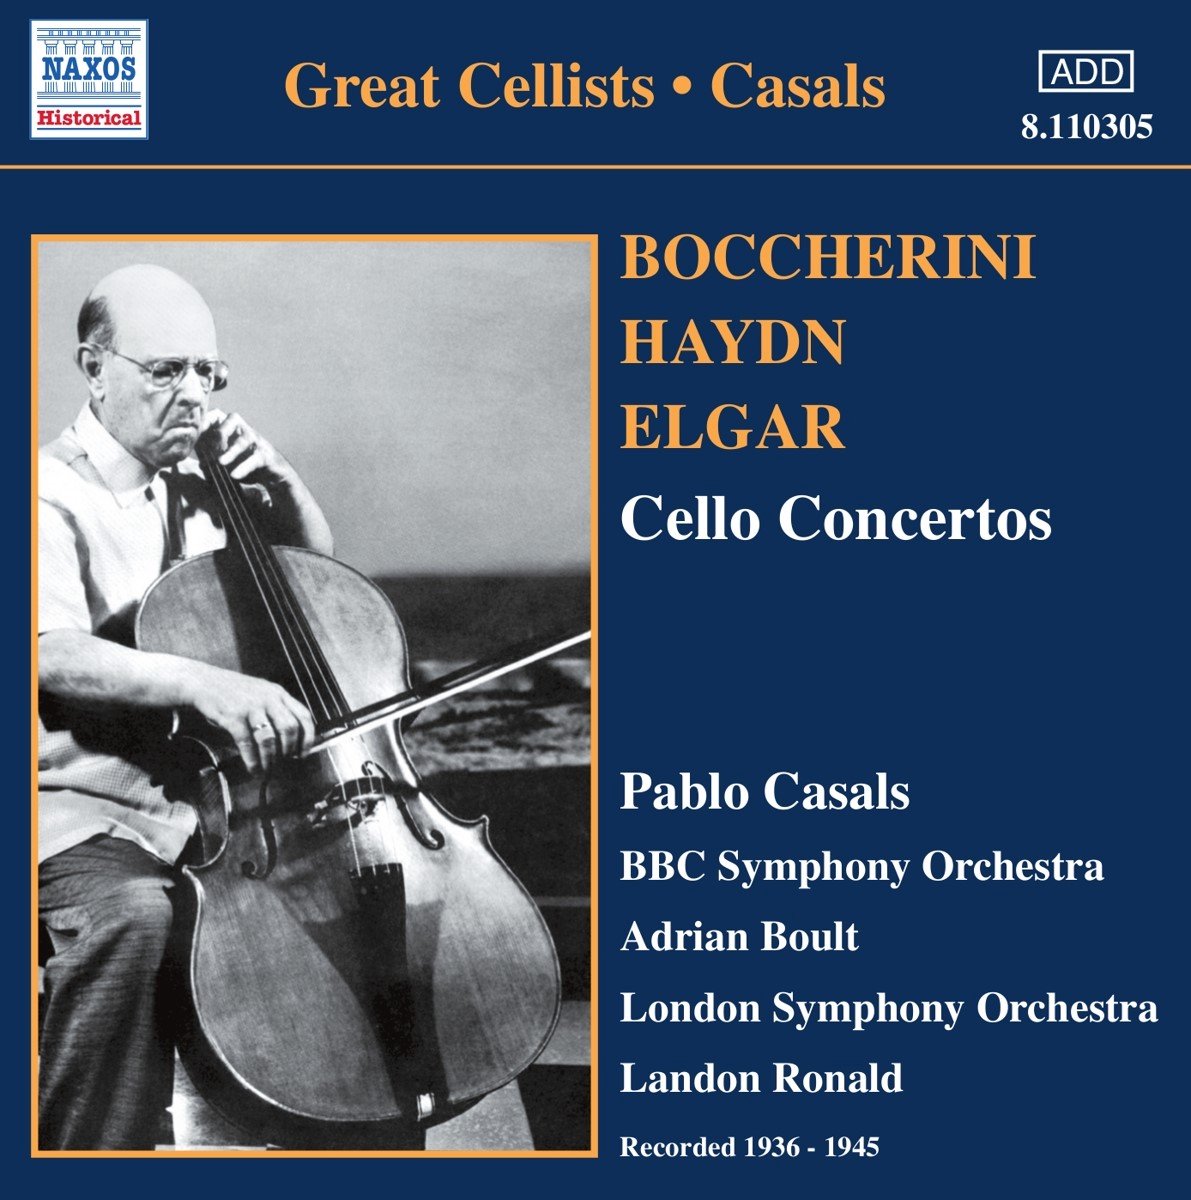 Pablo Casals - Cello Concertos (CD) - Pablo Casals